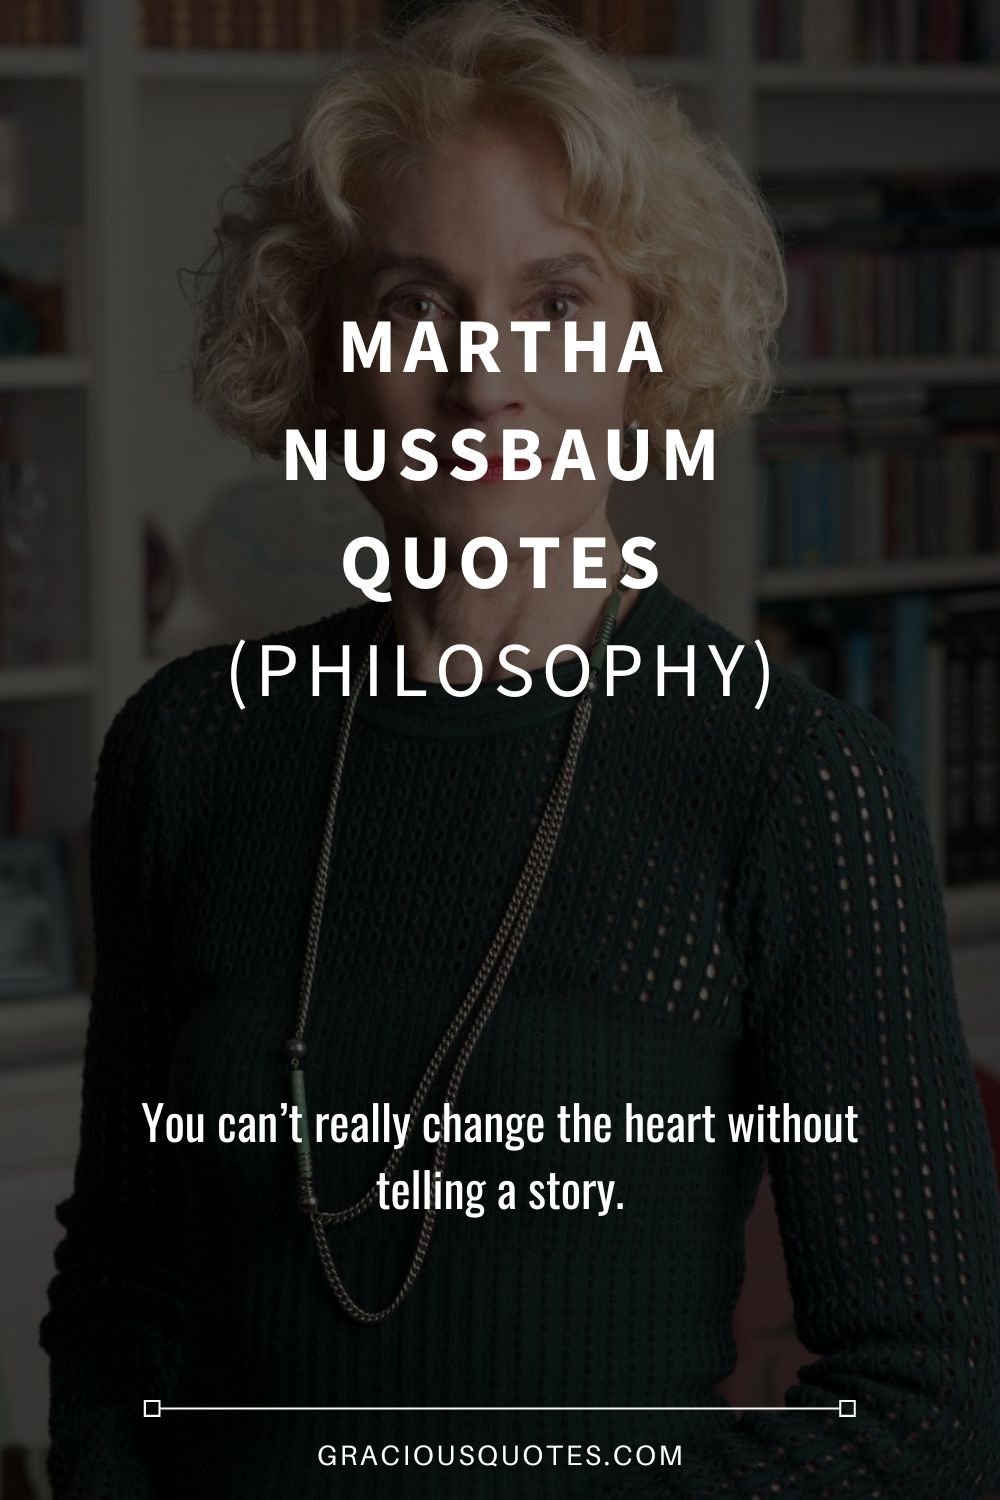 Martha Nussbaum Quotes (PHILOSOPHY) - Gracious Quotes